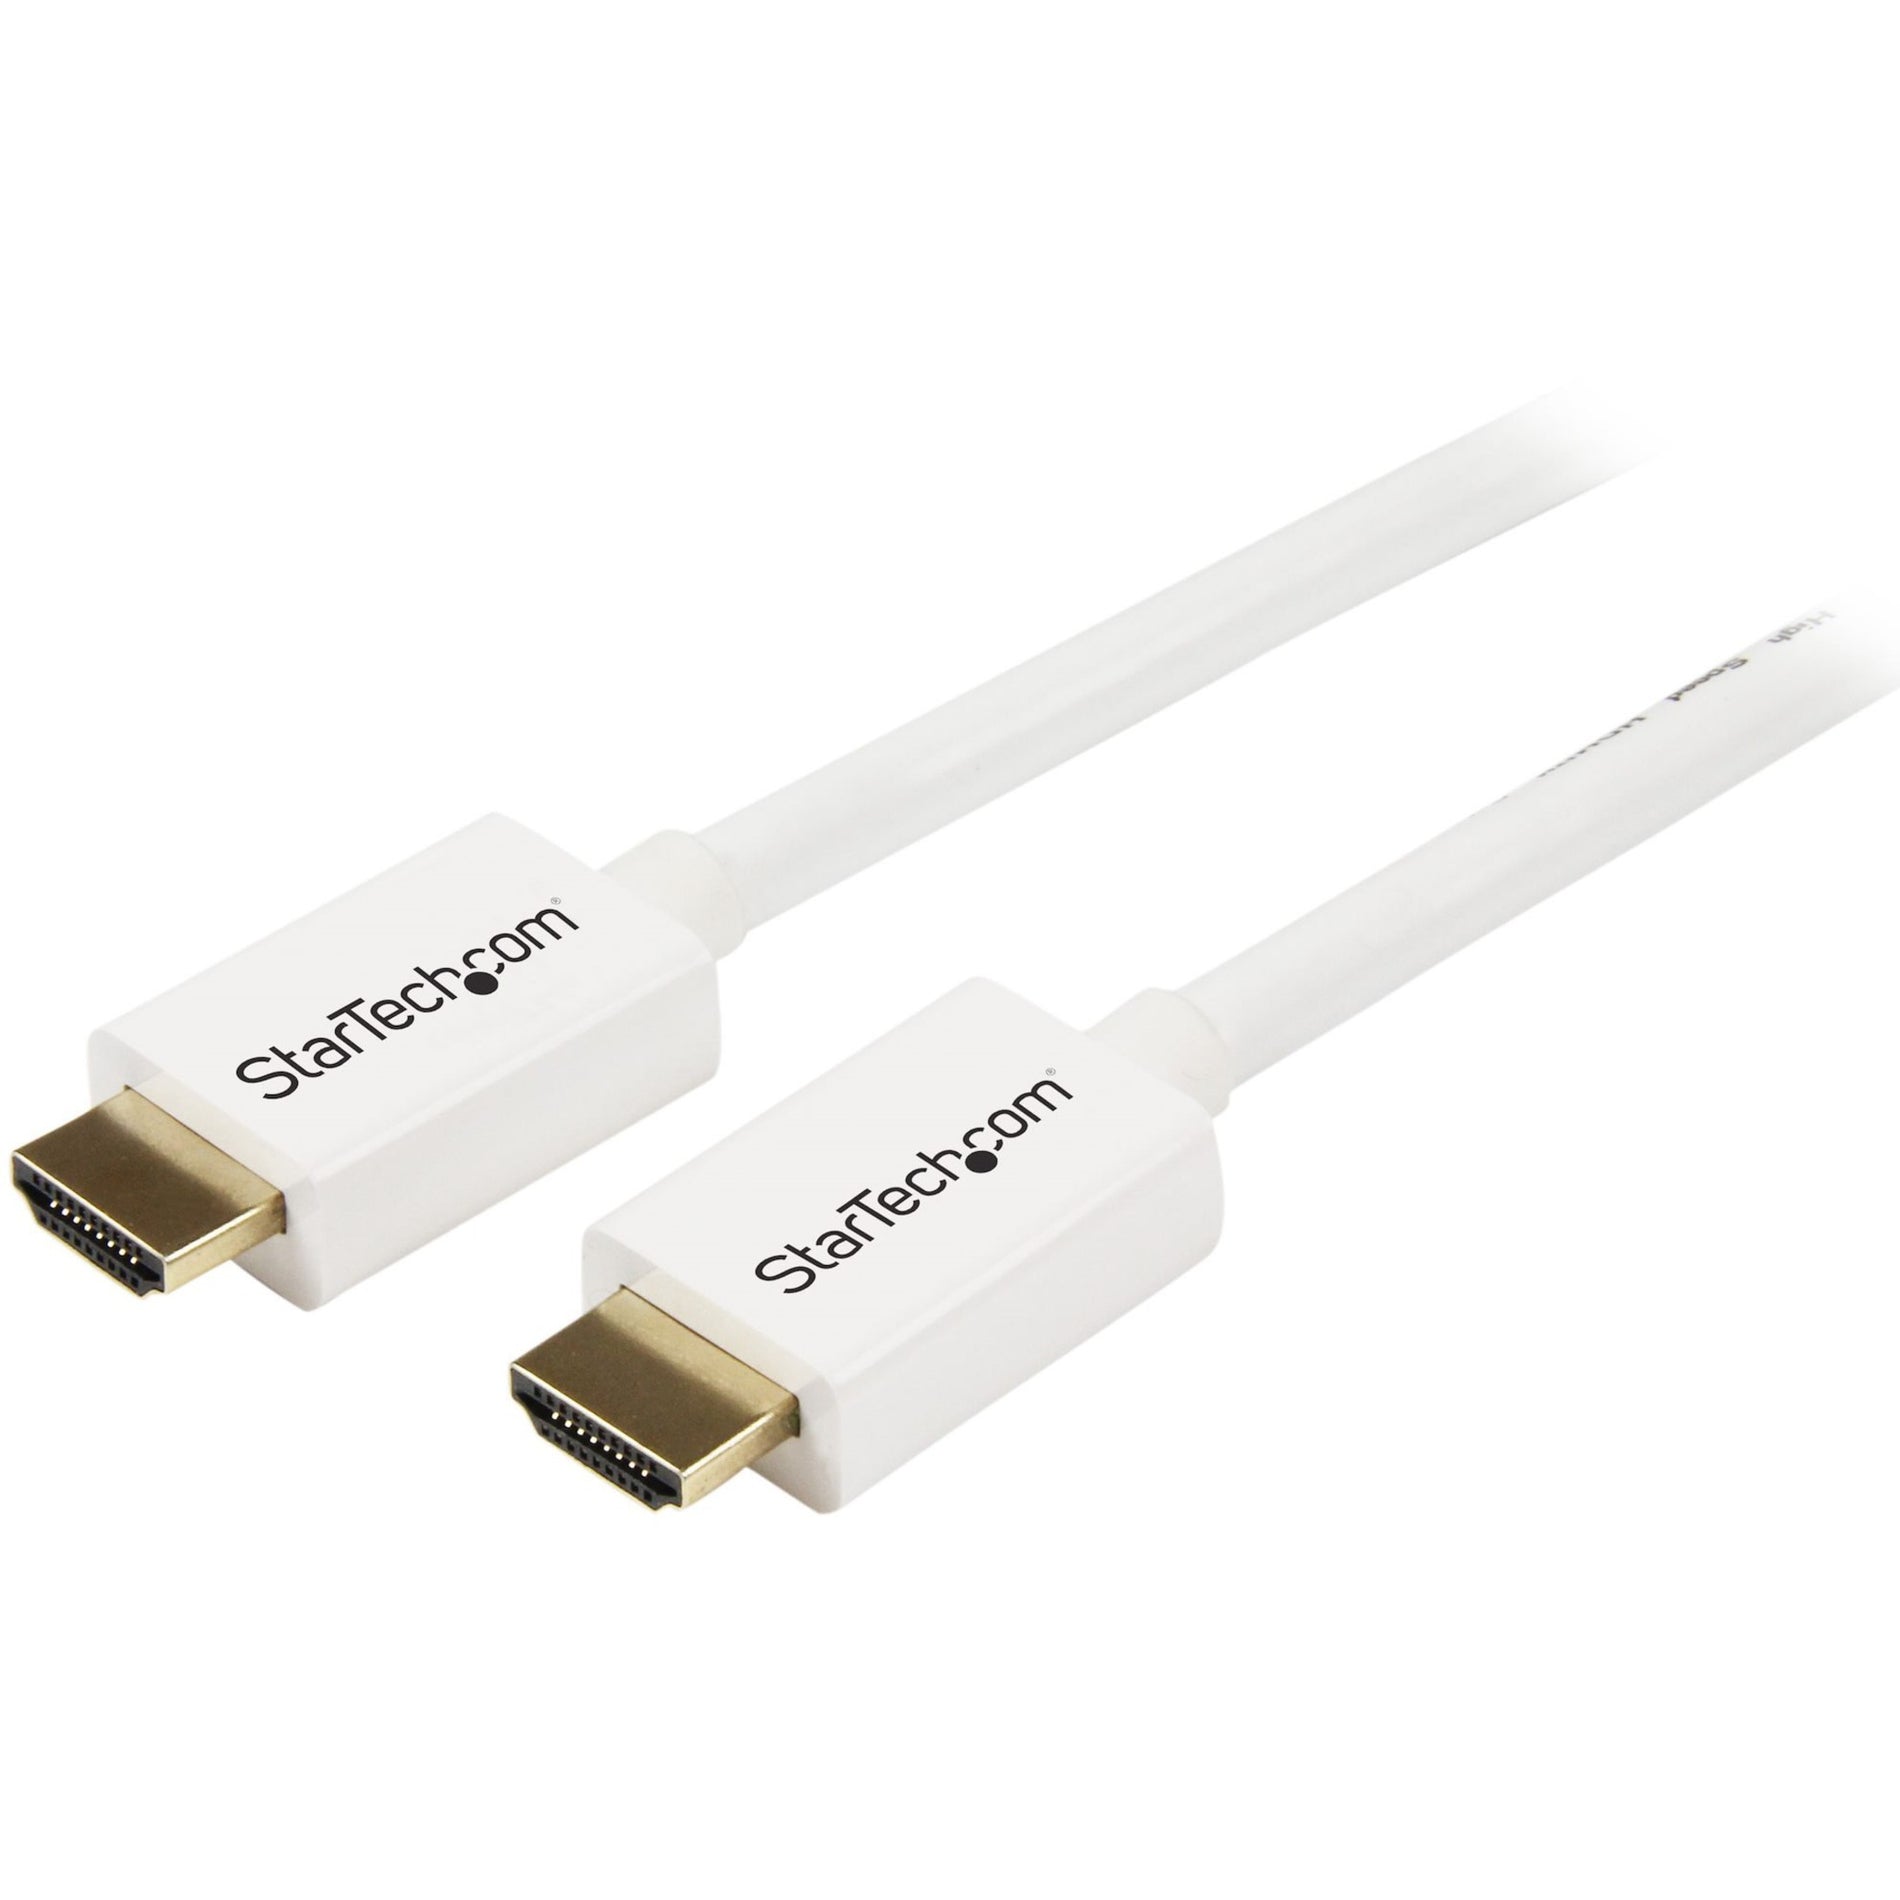 كابل HDMI عالي السرعة في الحائط StarTech.com HD3MM3MW أبيض - HDMI إلى HDMI - M / M، 9.84 قدم، خالٍ من التآكل، موصلات مطلية بالذهب، معدل نقل بيانات 10.2 جيجابت في الثانية